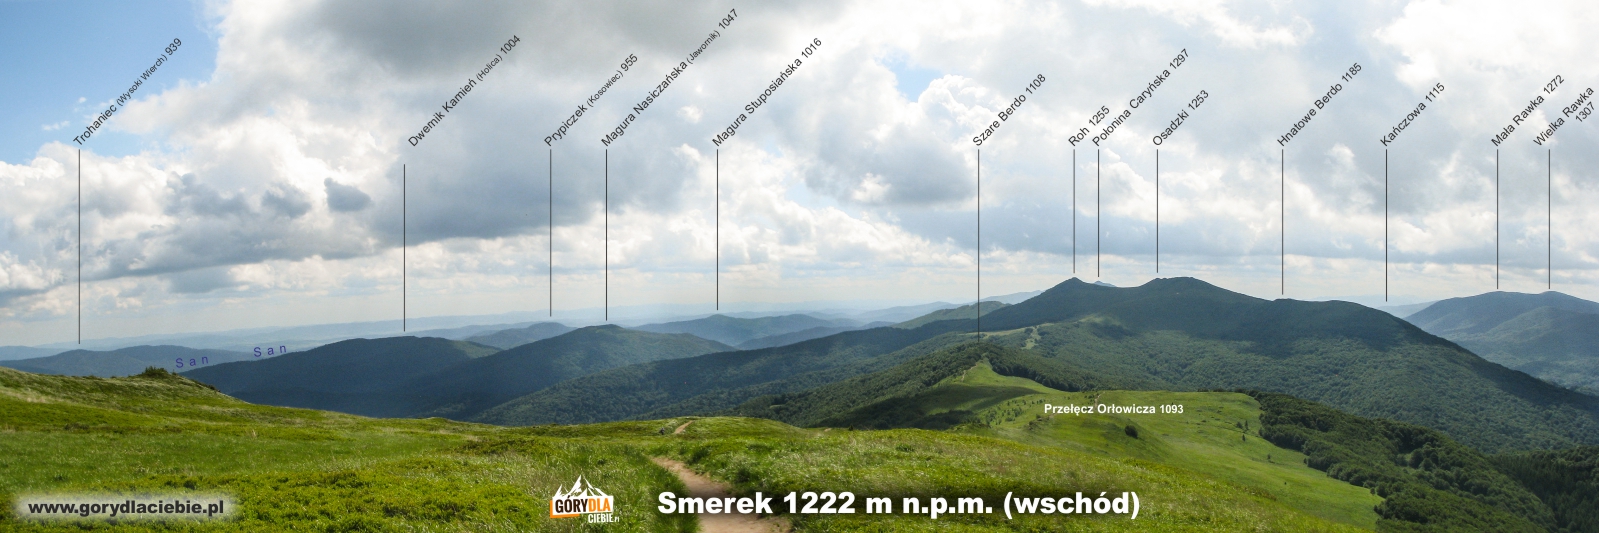 Panorama (z opisem) ze Smereka w kierunku wschodnim